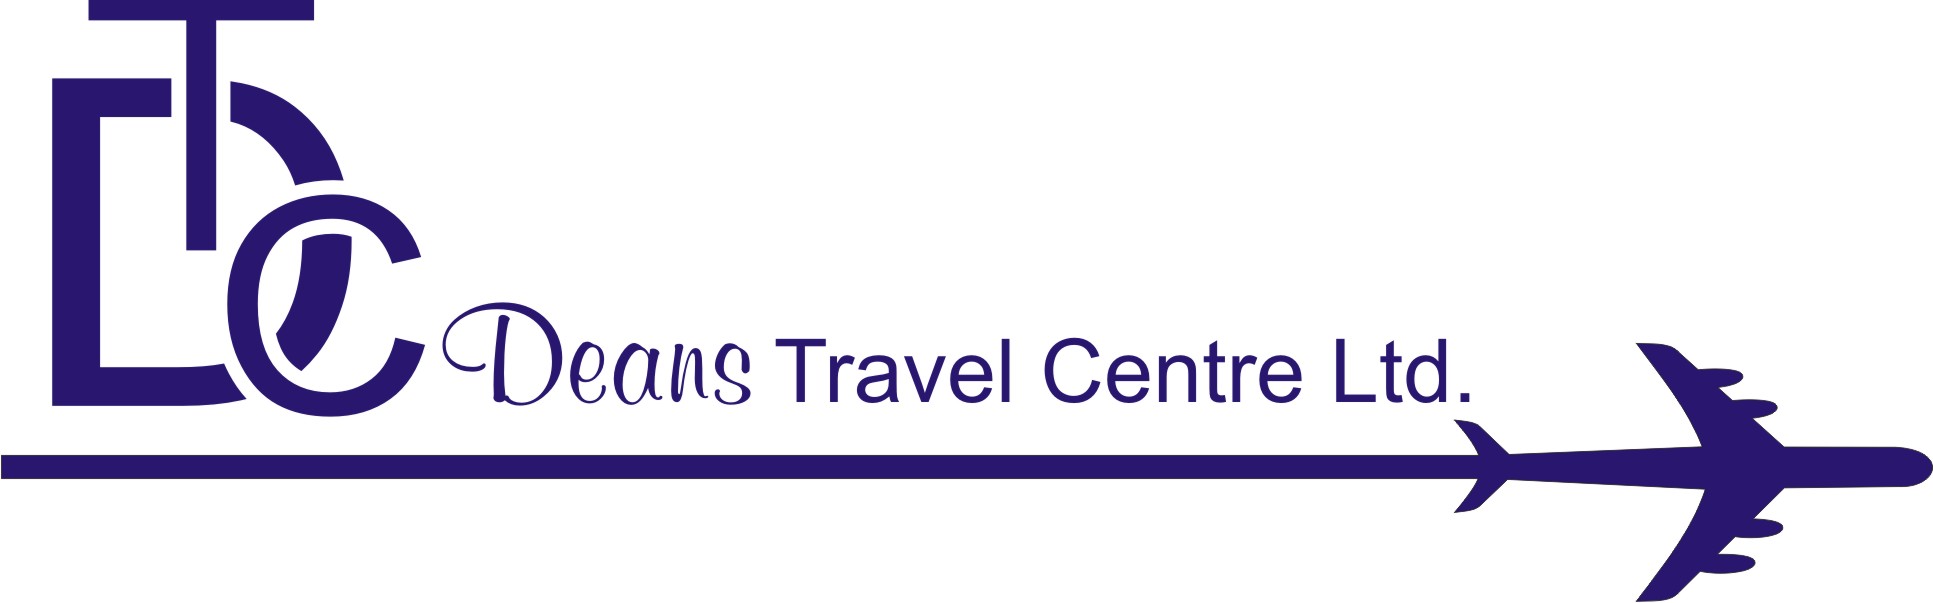 Deans Travel Centre Ltd